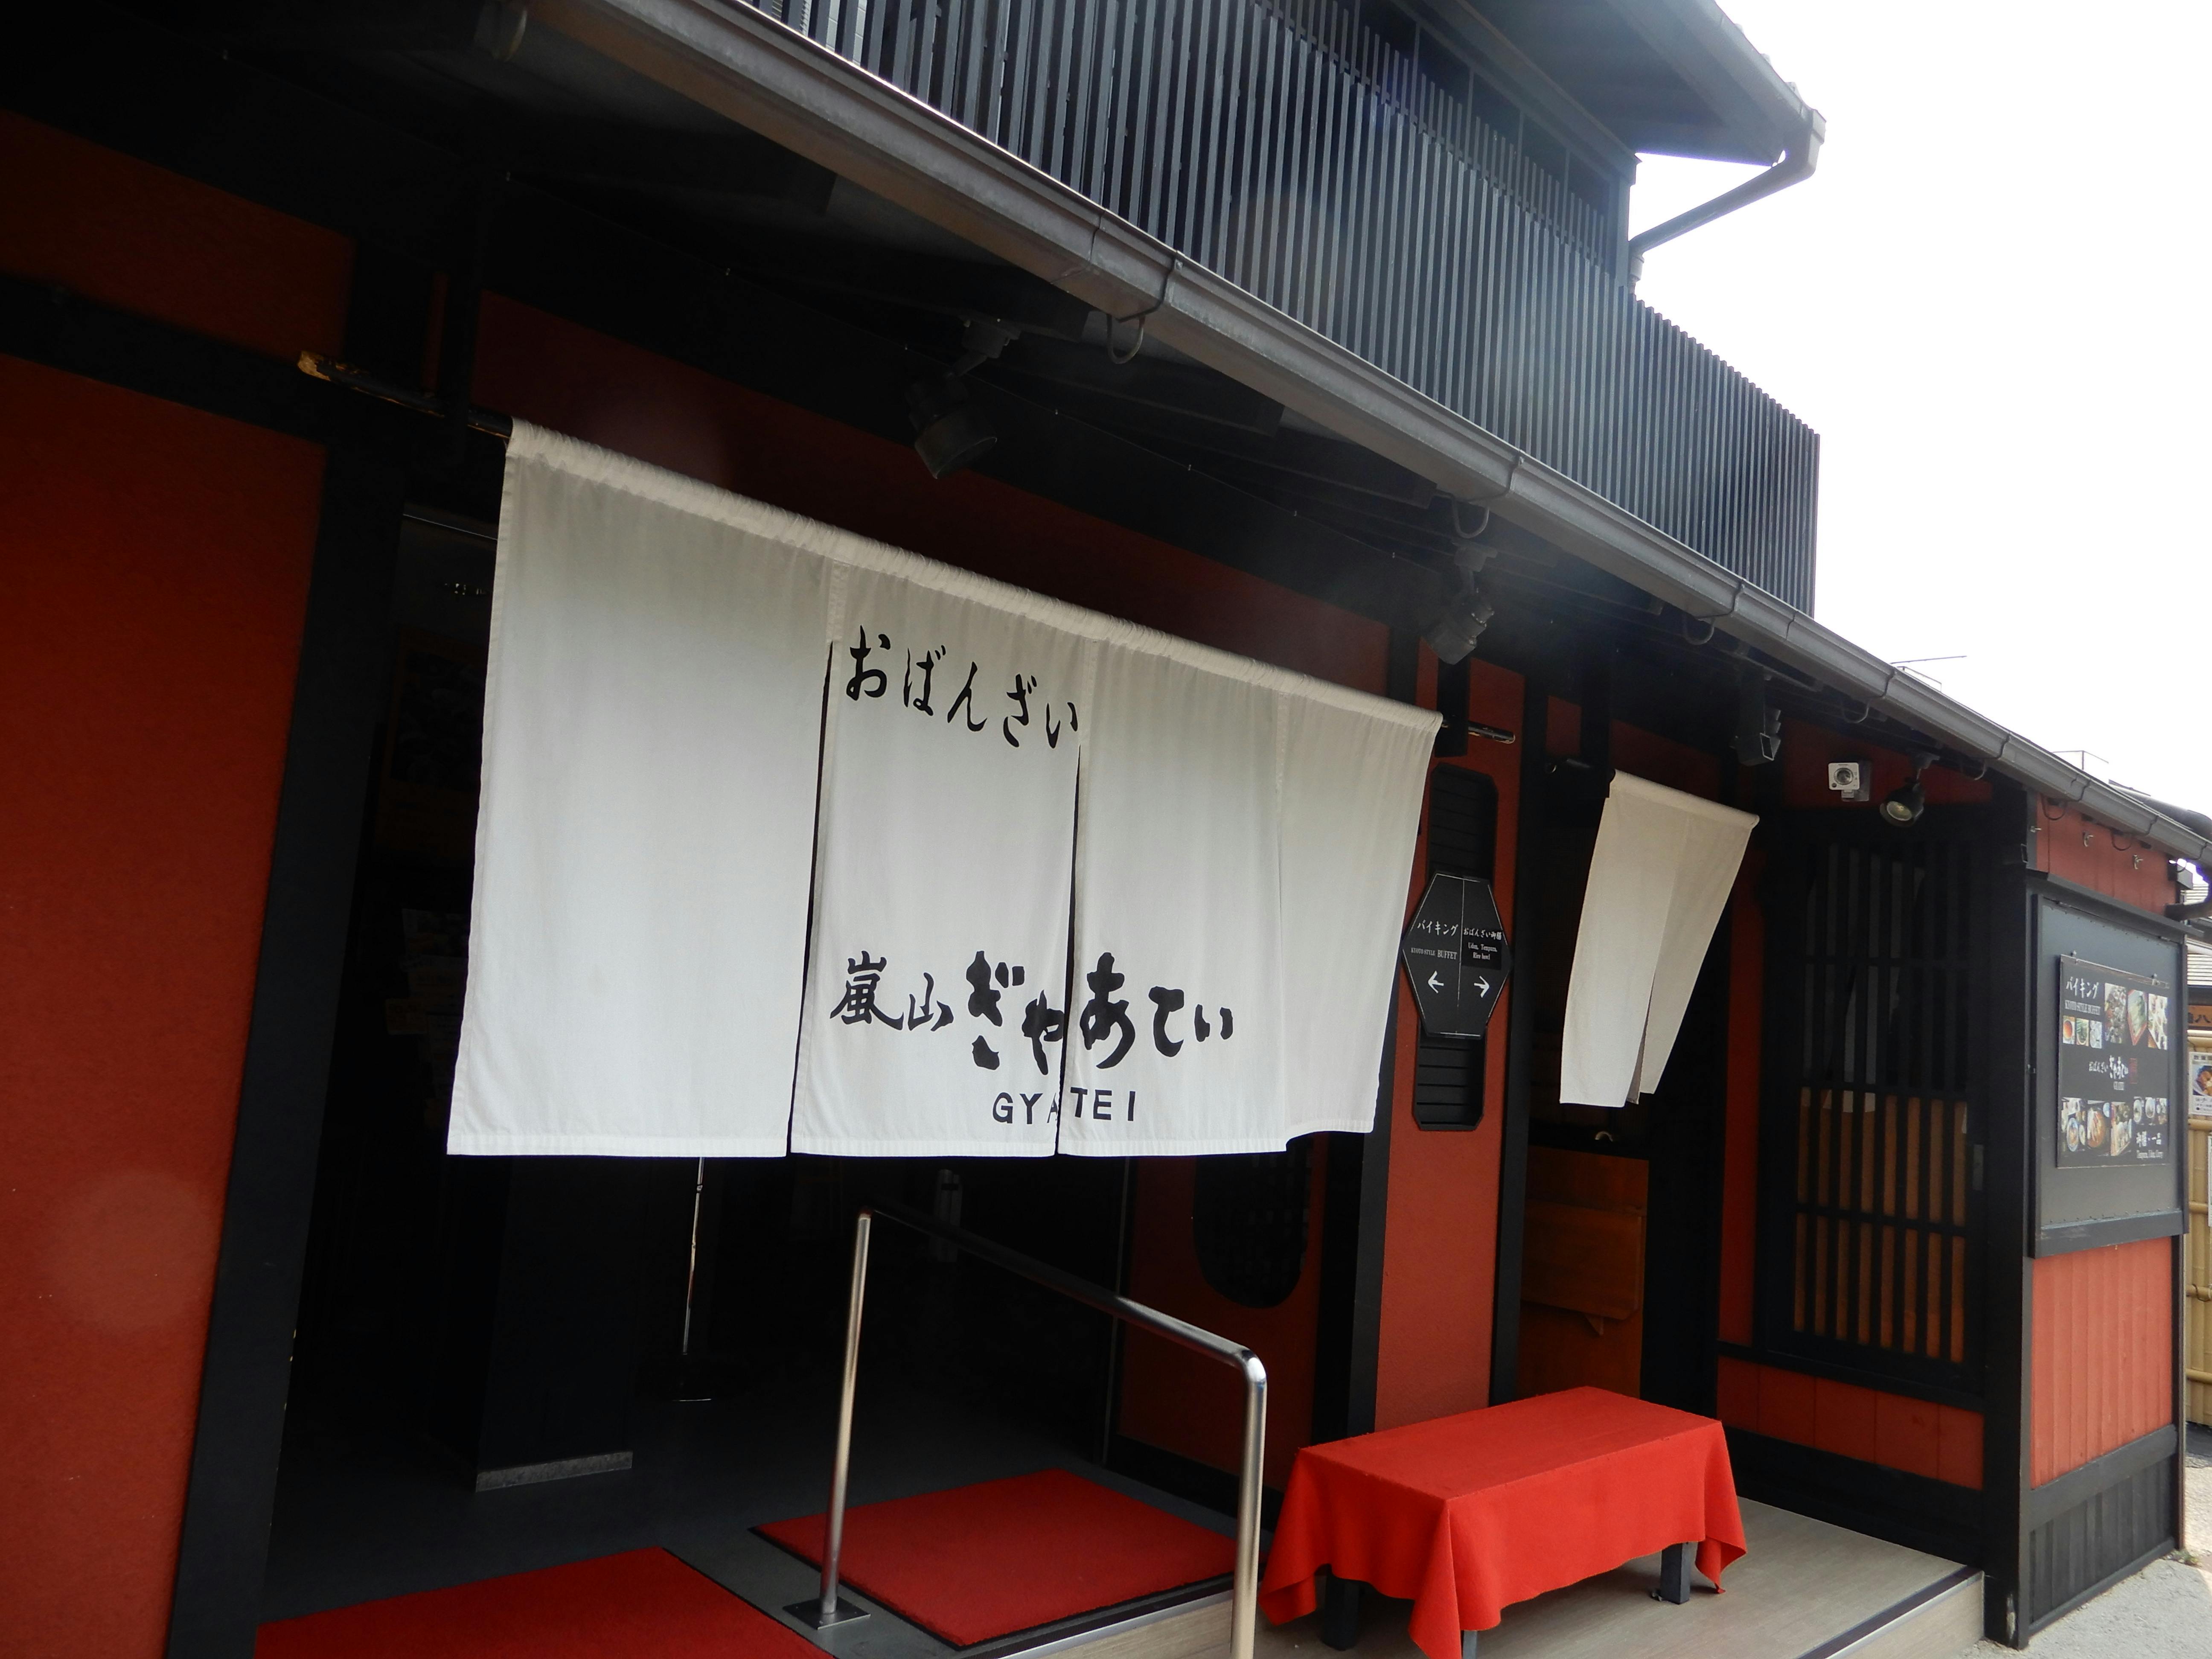 新たなチャレンジをする京都嵐山の元祖おばんざい屋「ぎゃあてい」にご支援ください CAMPFIRE (キャンプファイヤー)